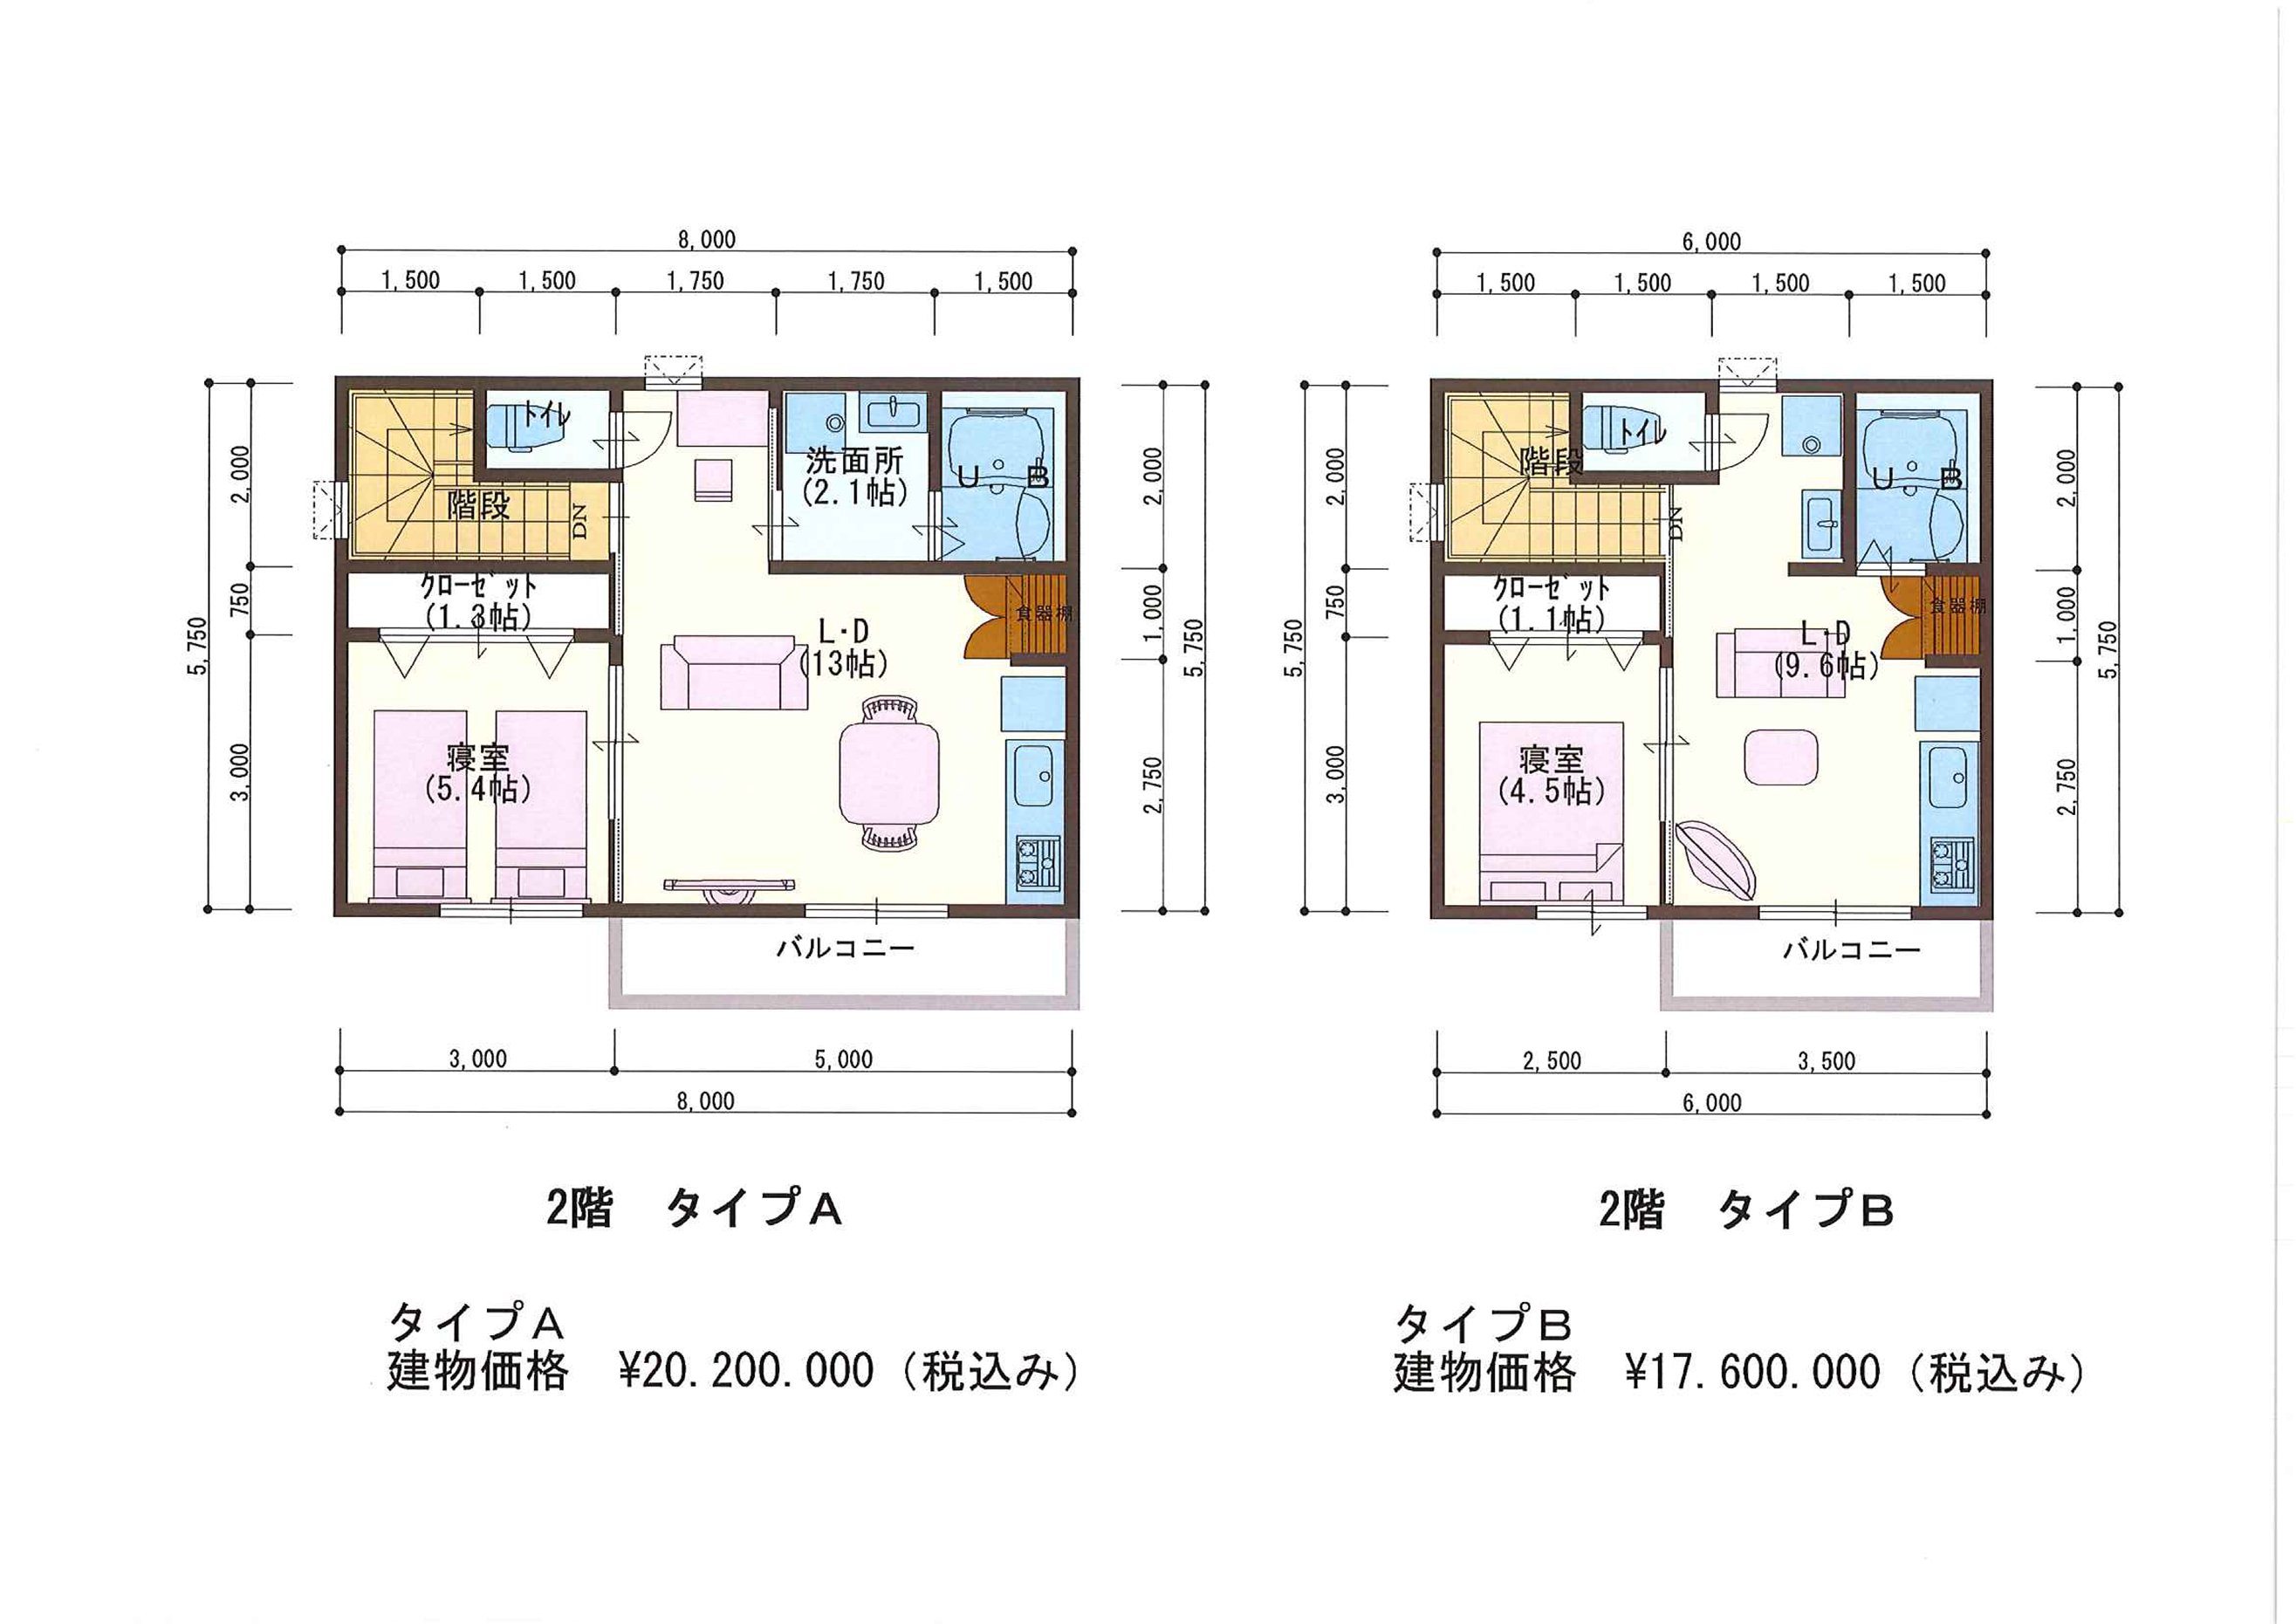 戸建てガレージハウス2階平面図 料金掲載 千葉県の注文住宅 非住宅建築なら忠創建設株式会社へ